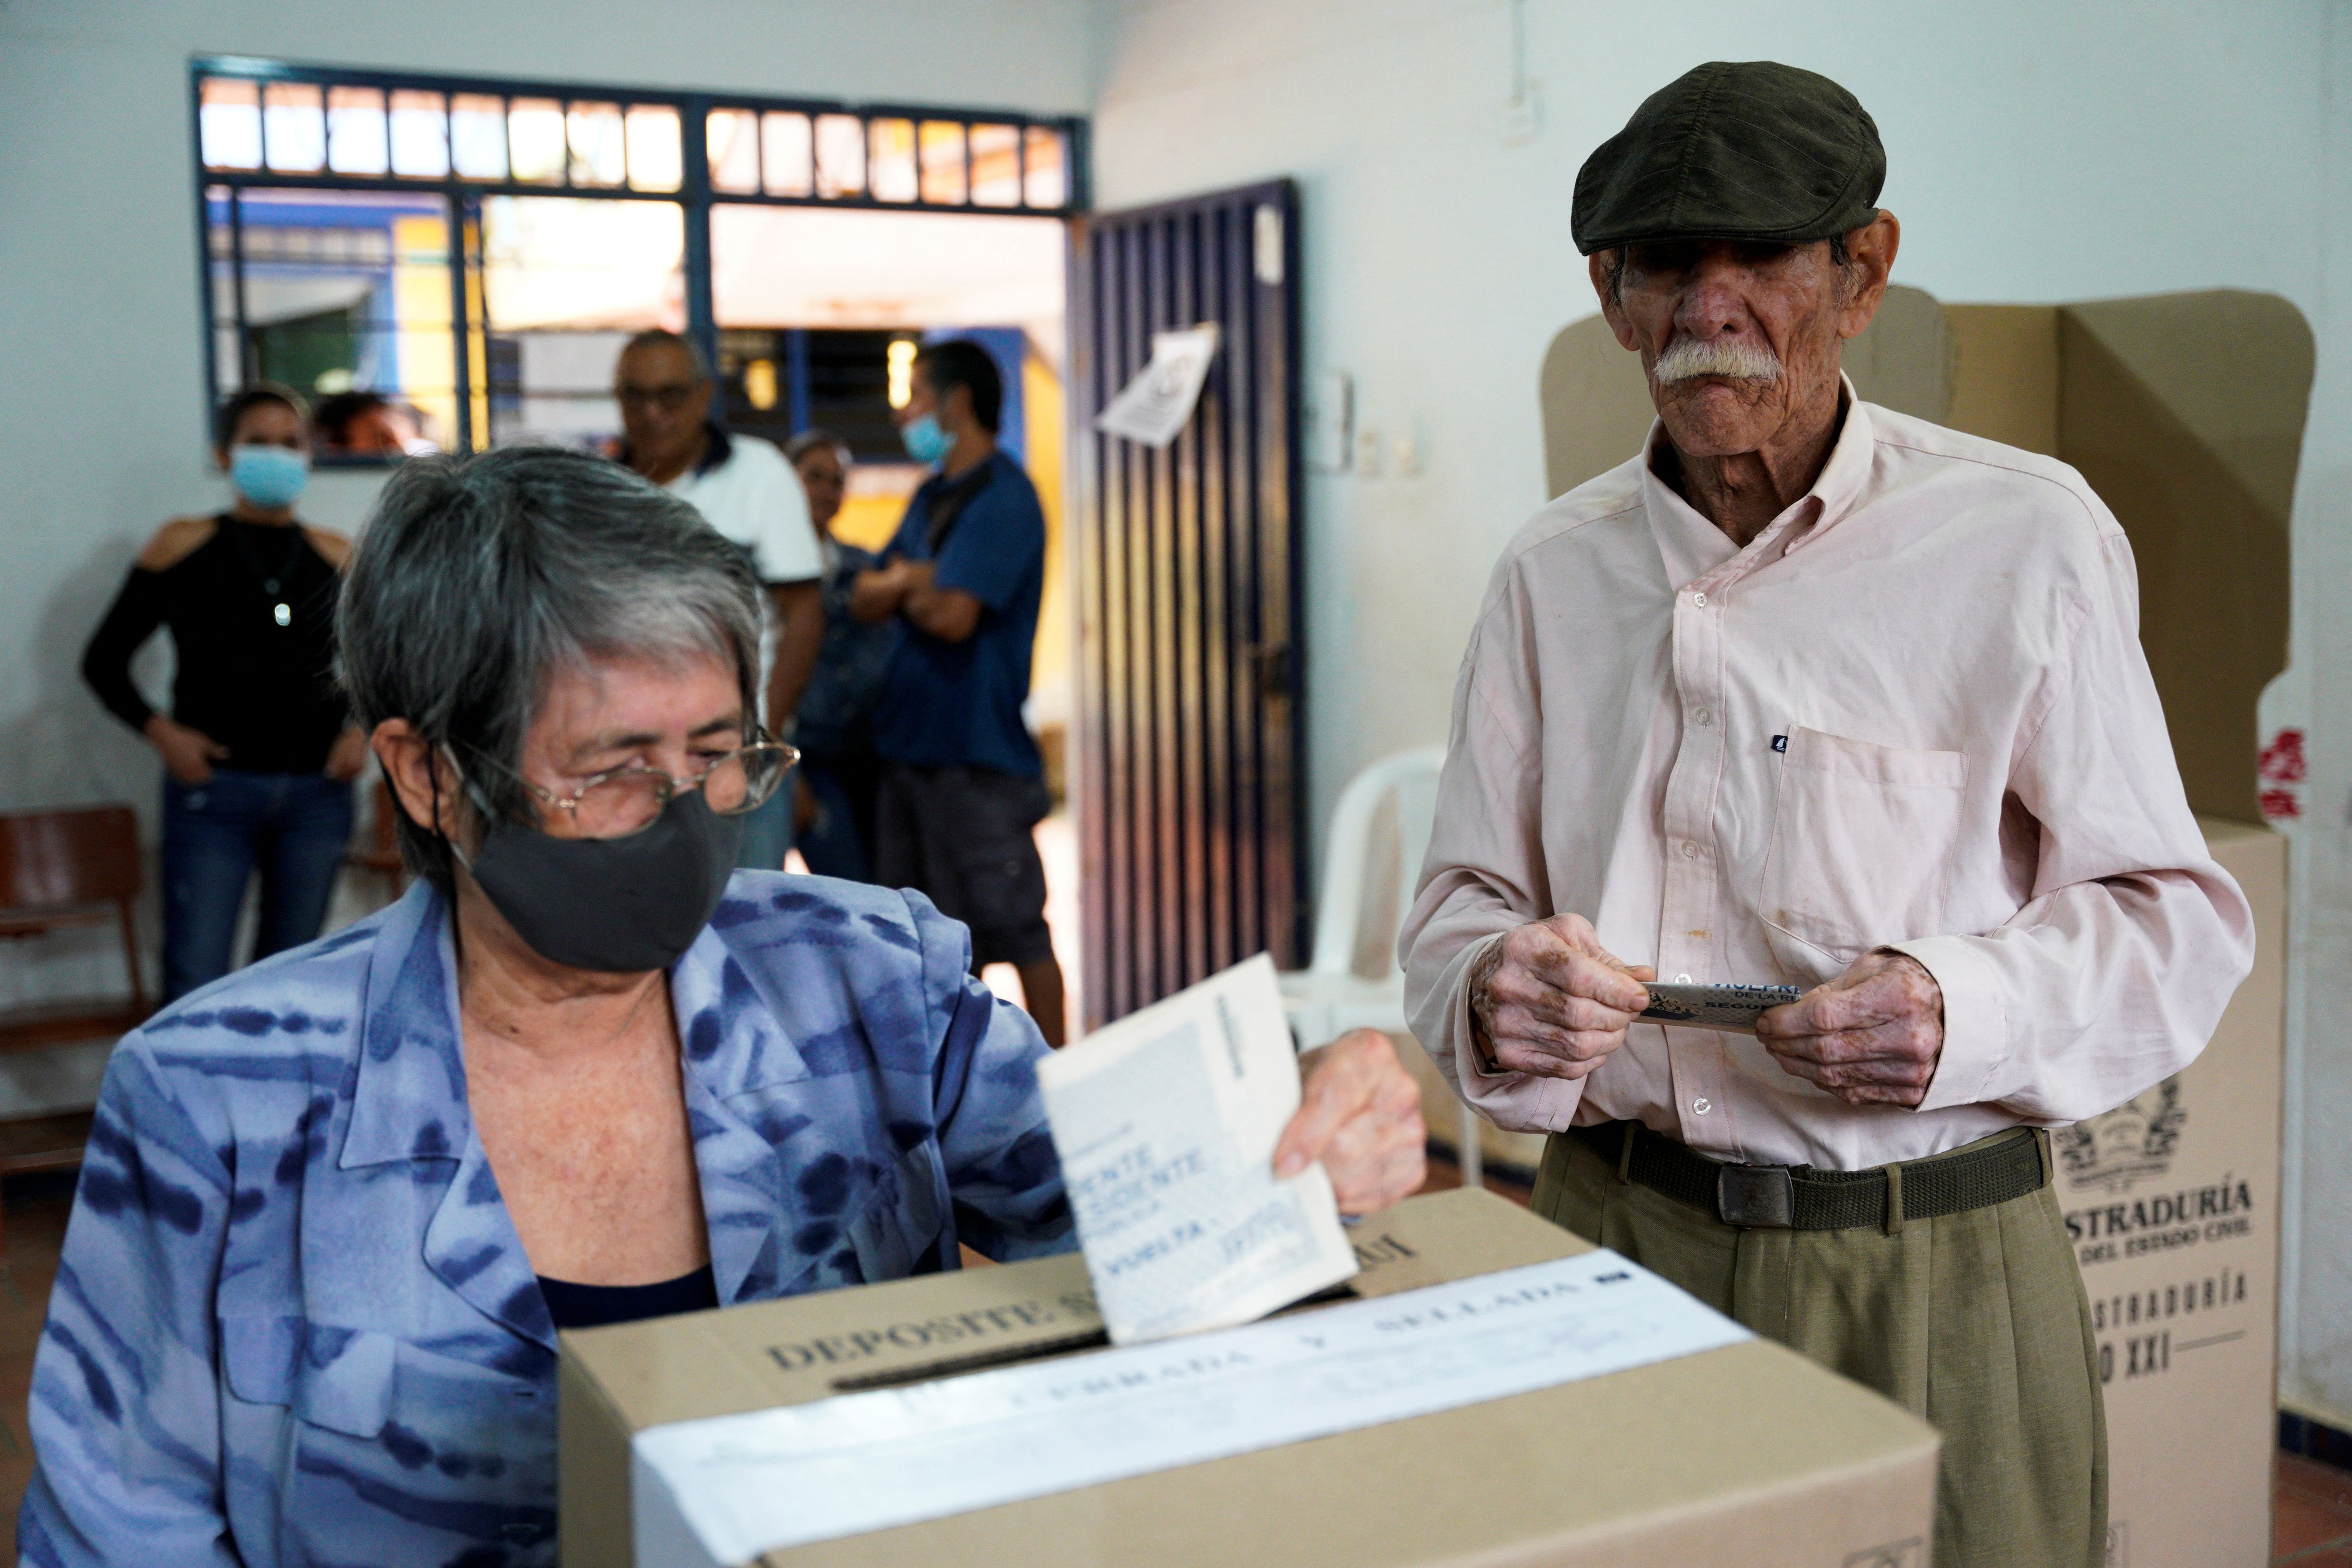 Una persona deposita su voto en la urna durante la segunda vuelta de la elección presidencial de Colombia en un puesto electoral del municipio de Girón, en el departamento de Santander, Colombia, 19 de junio, 2022. REUTERS/Santiago Argos